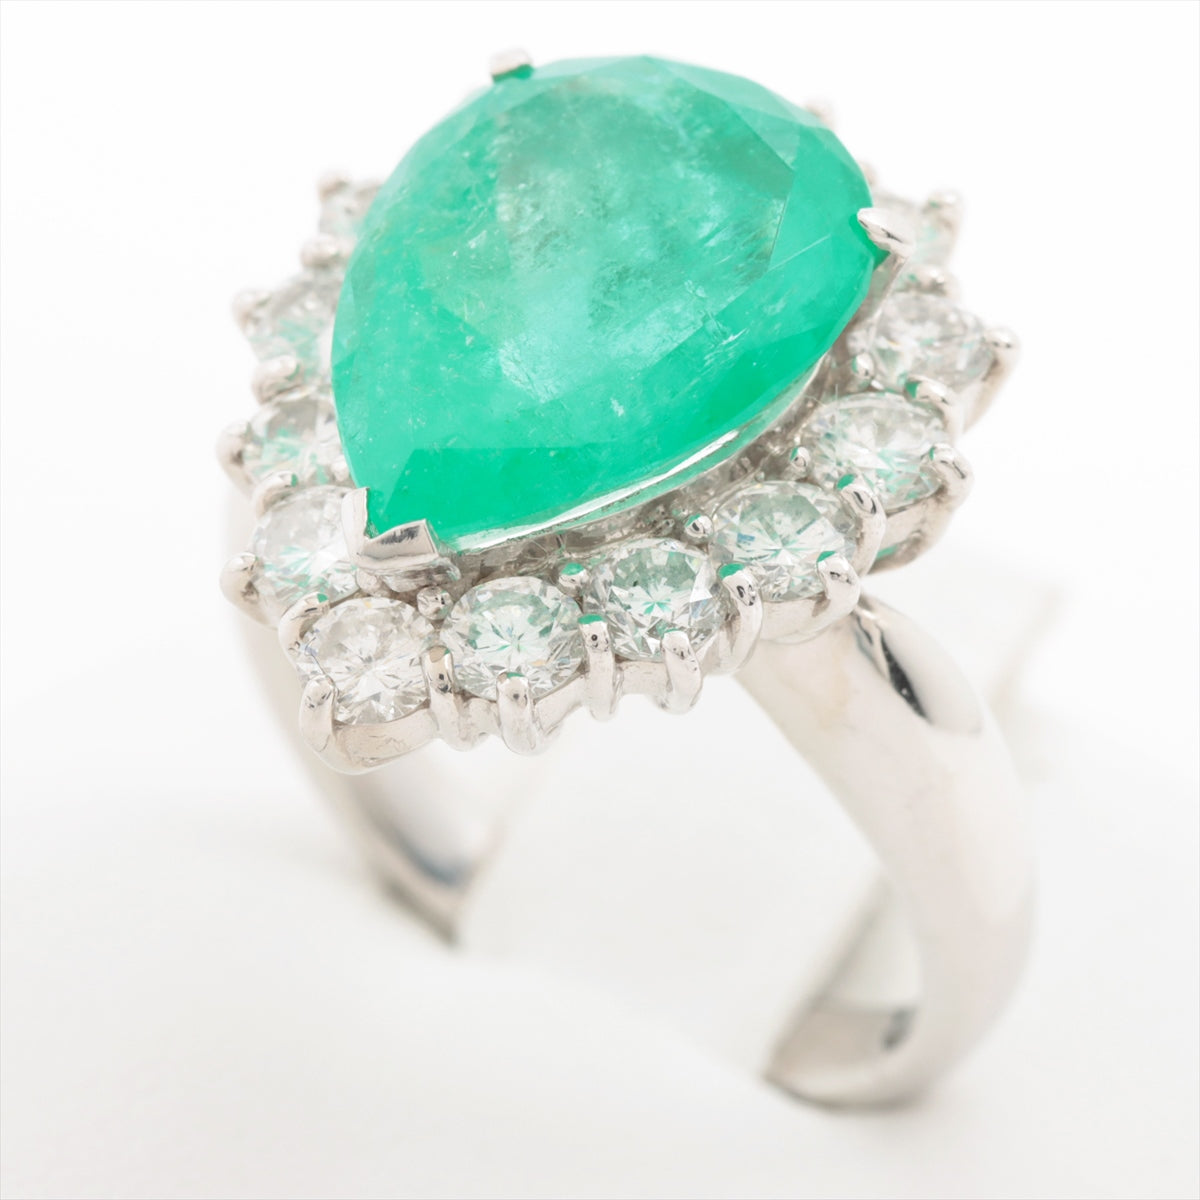 Emerald Diamond Ring Pt900 10.6g 499 D146